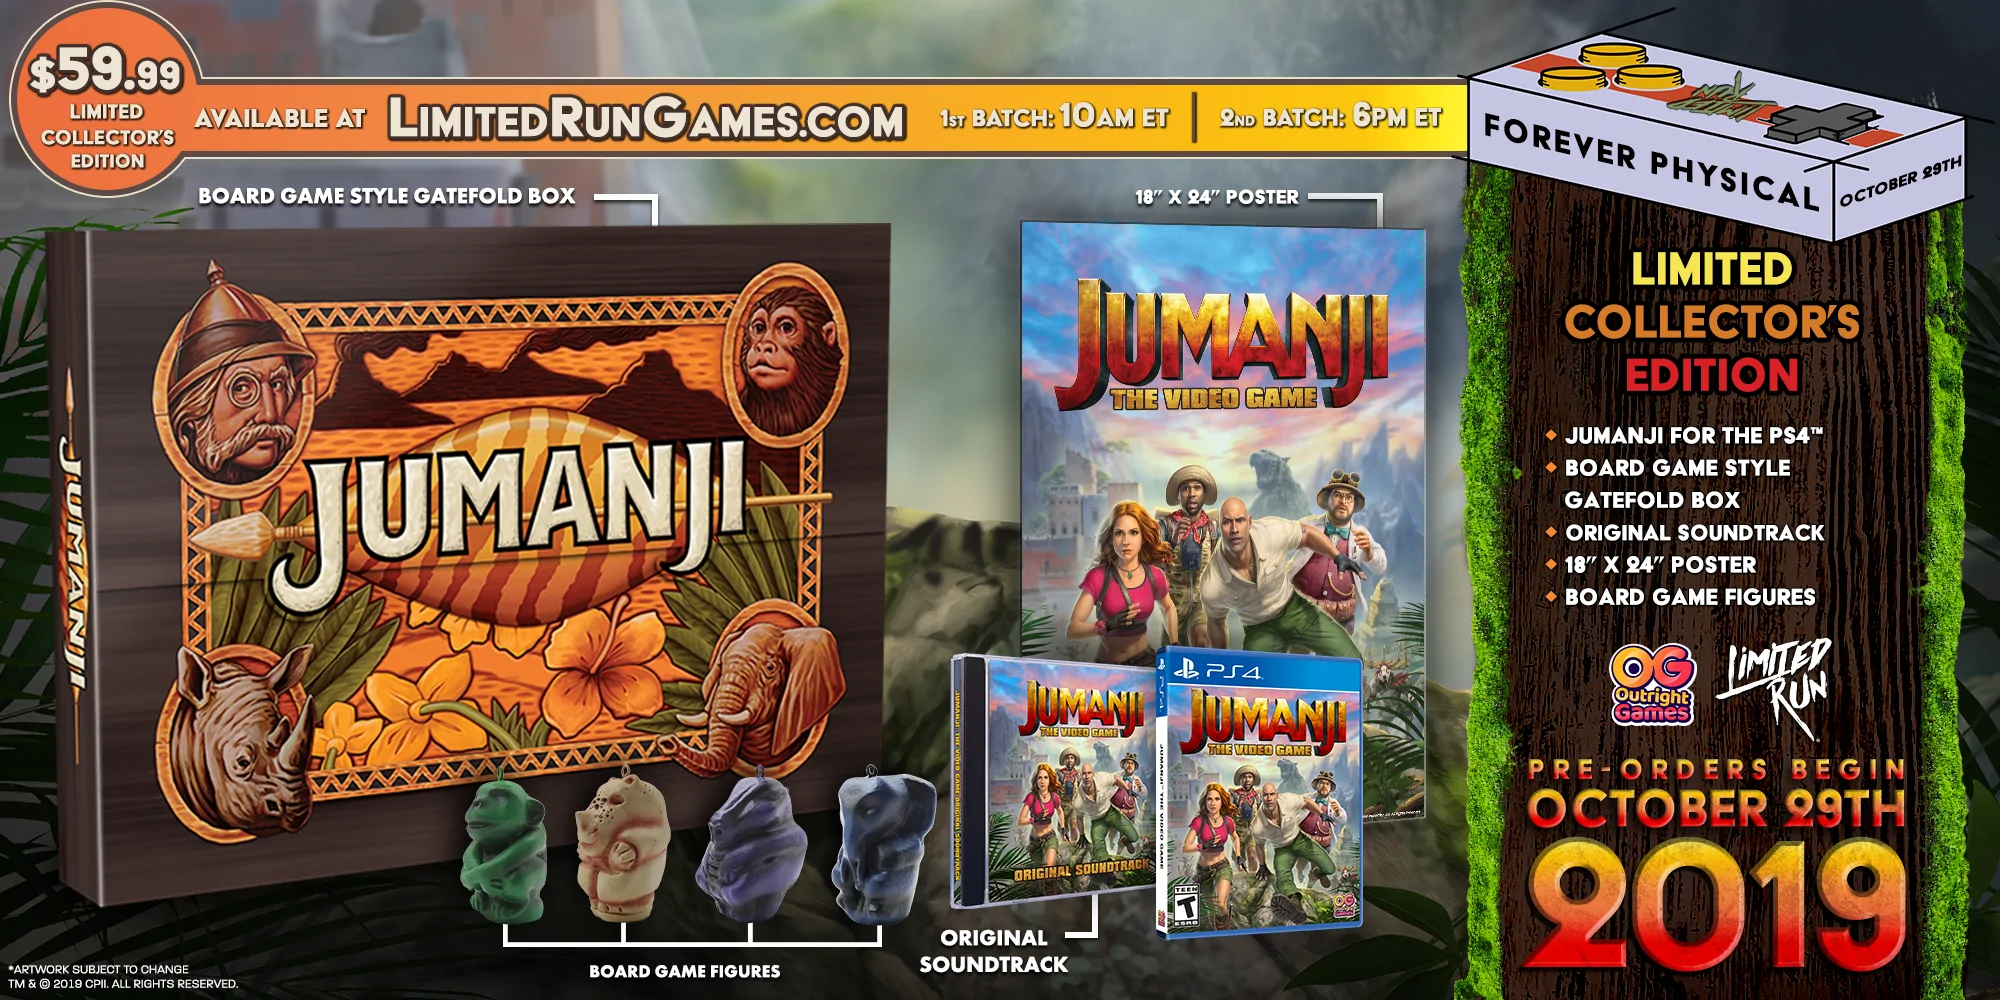 Jumanji: Wild Adventures' foi lançado para consolas e PC - Record Gaming -  Jornal Record